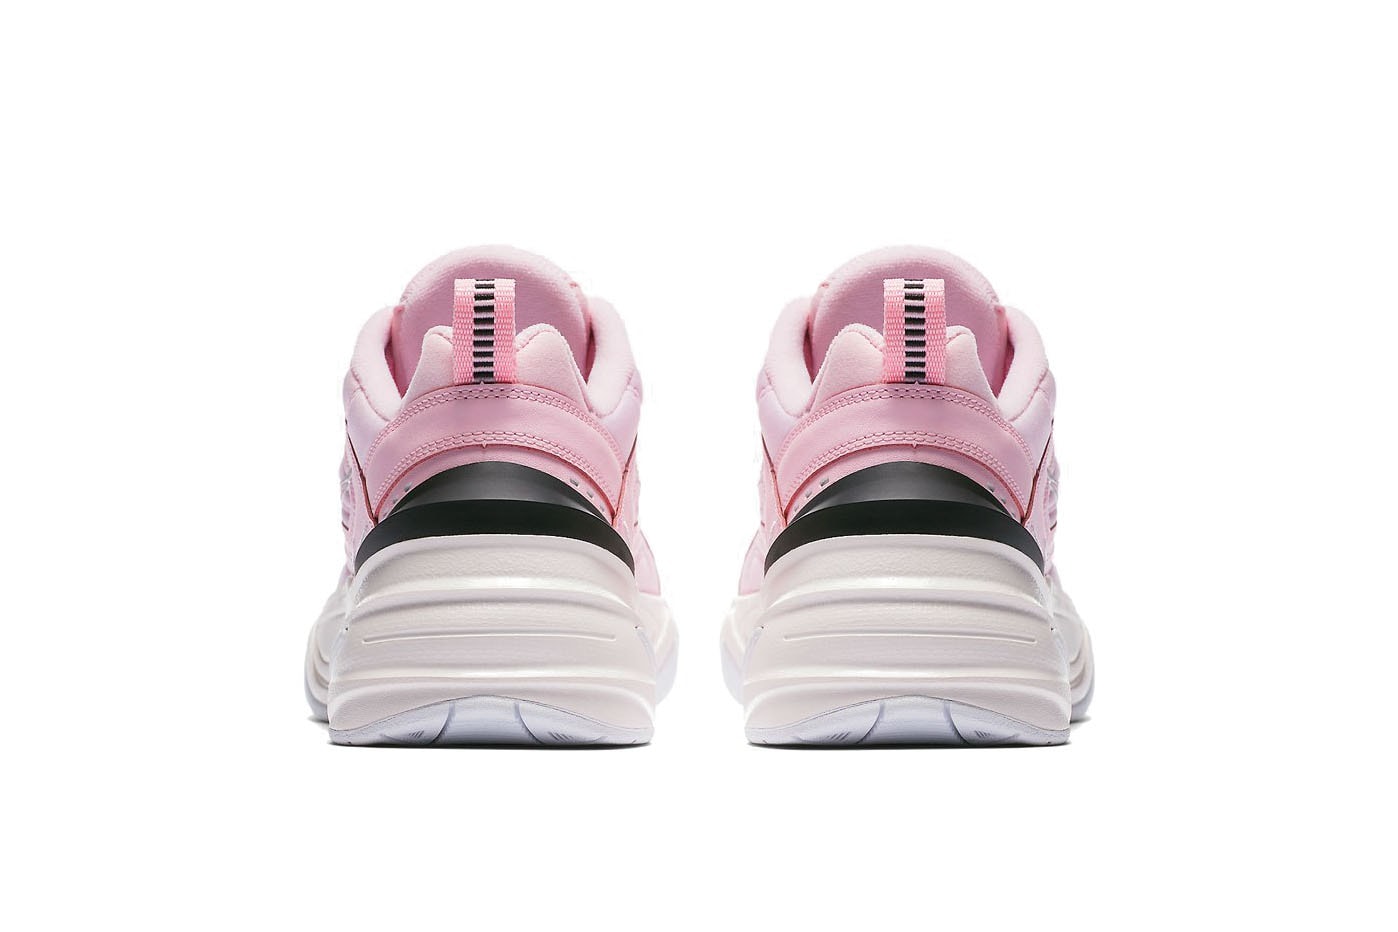 Nike's M2K Tekno Chunky Sneaker Arrives in Pink Spring Colorway Dad Shoe Footwear Trainer